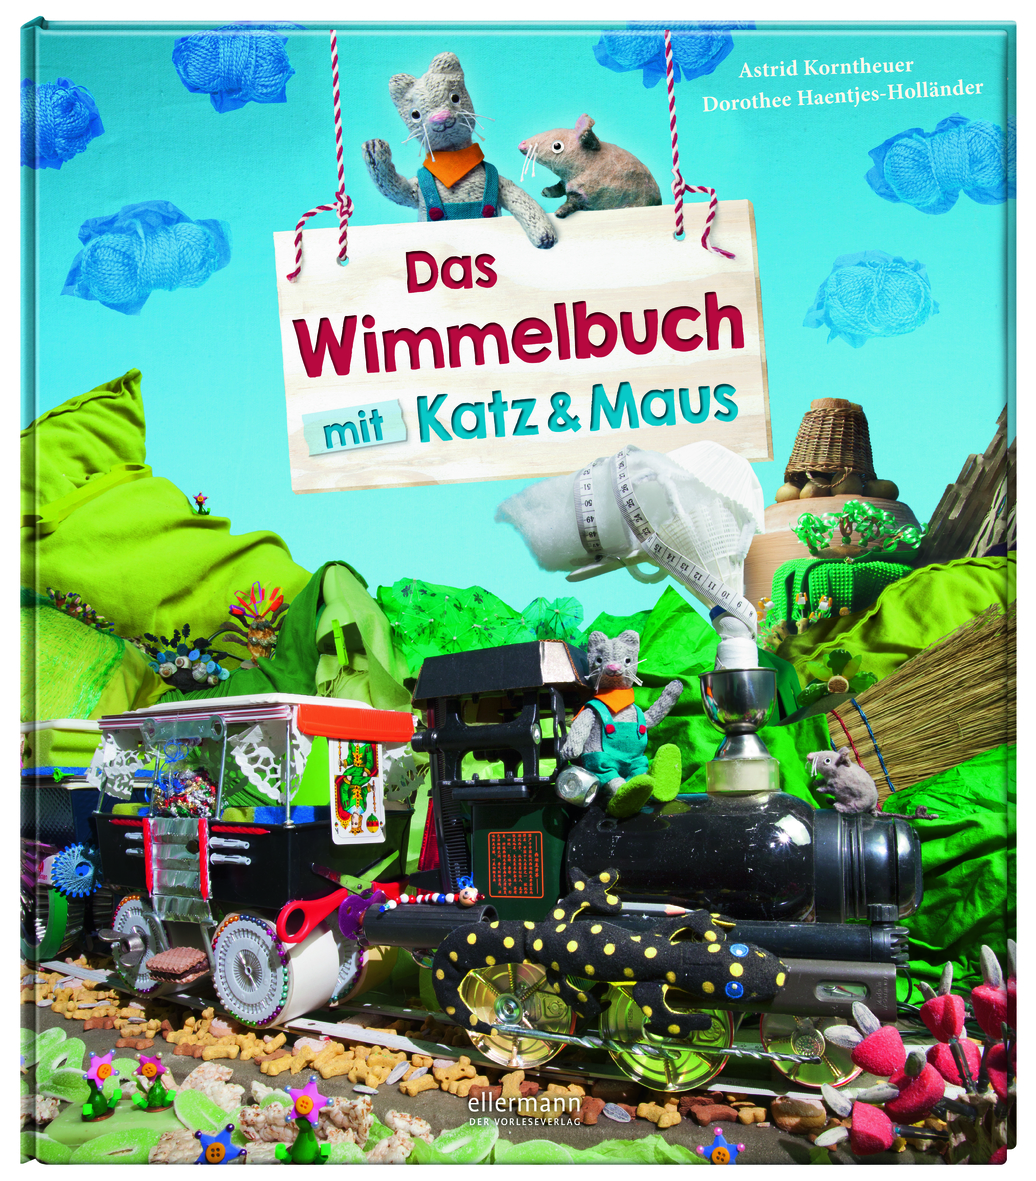 Haentjes-Holländer, Dorothee/Korntheuer, Astrid: Das Wimmelbuch mit Katz und Maus